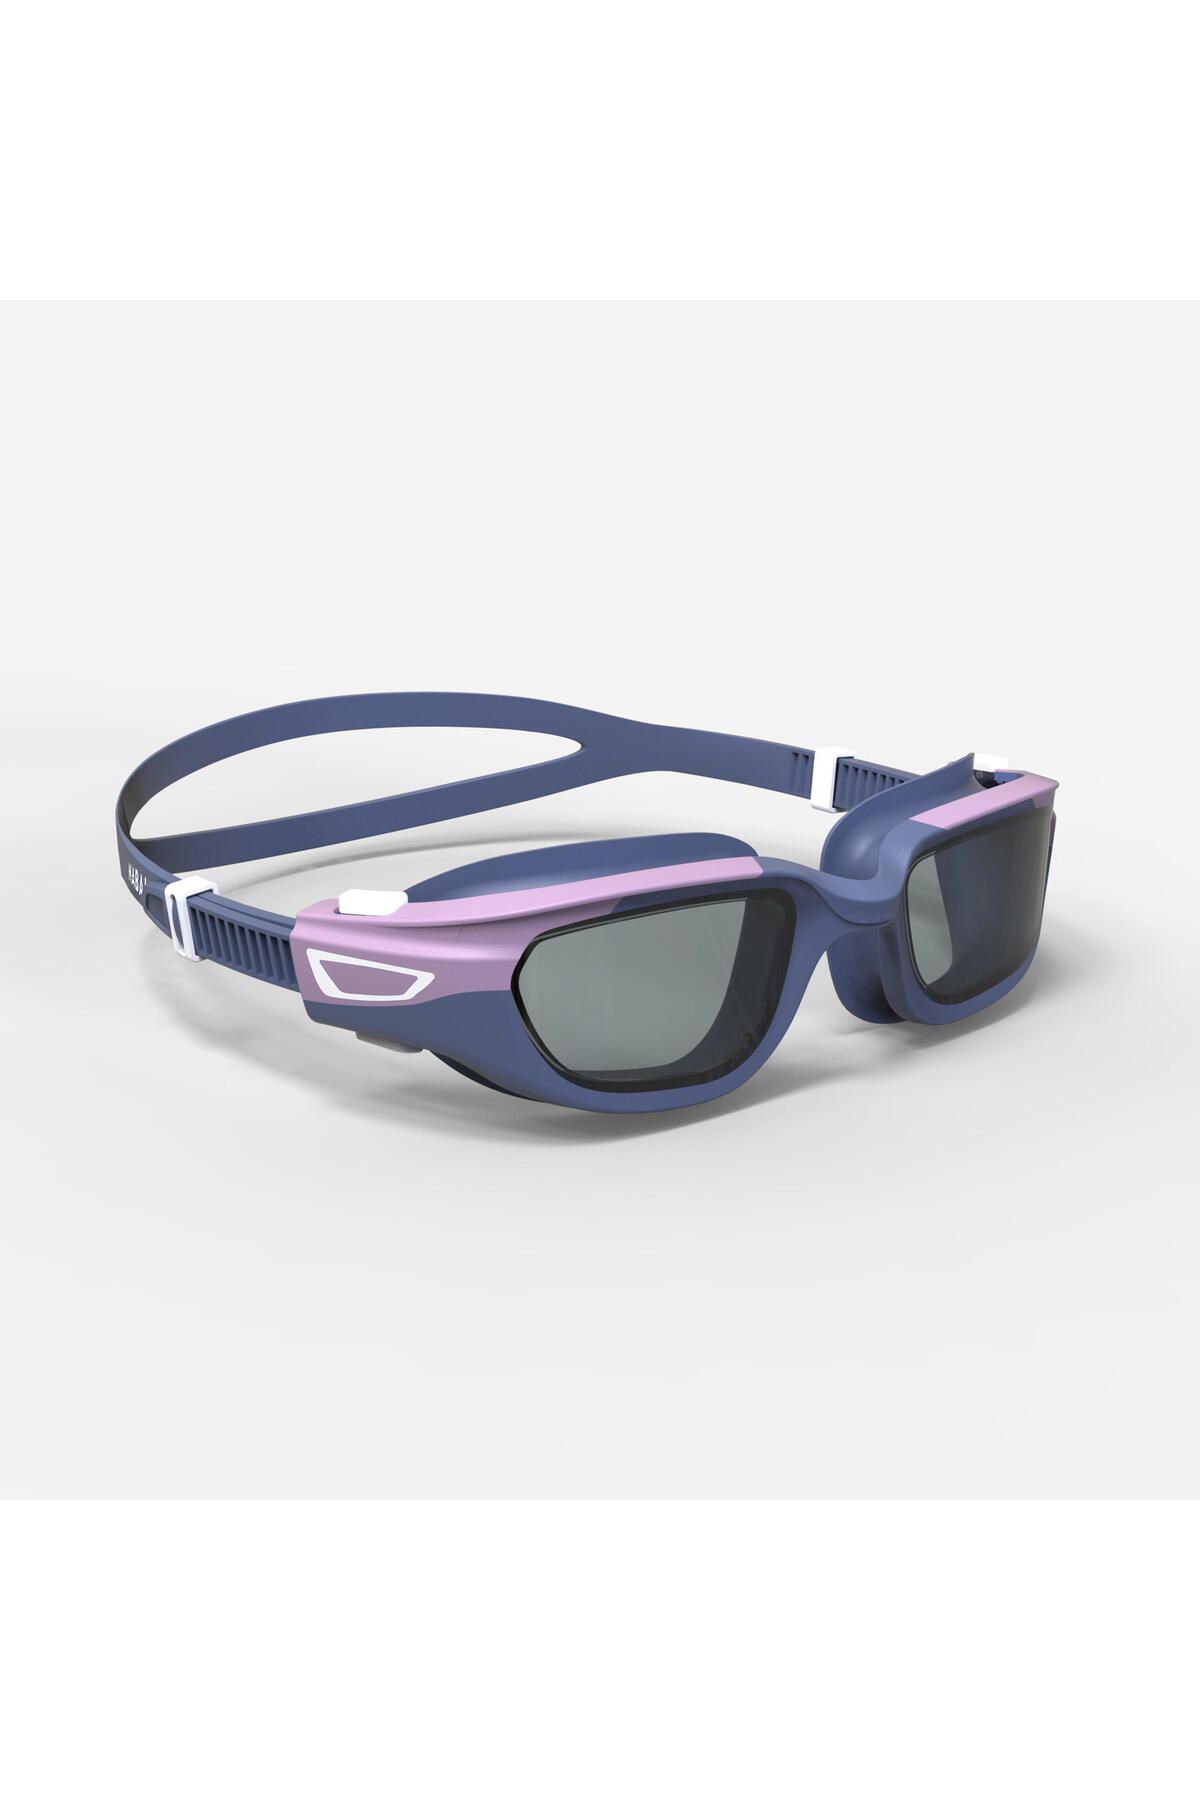 Decathlon Yüzücü Gözlüğü - Küçük Boy - Mavi/Mor - Şeffaf Camlar - Spirit